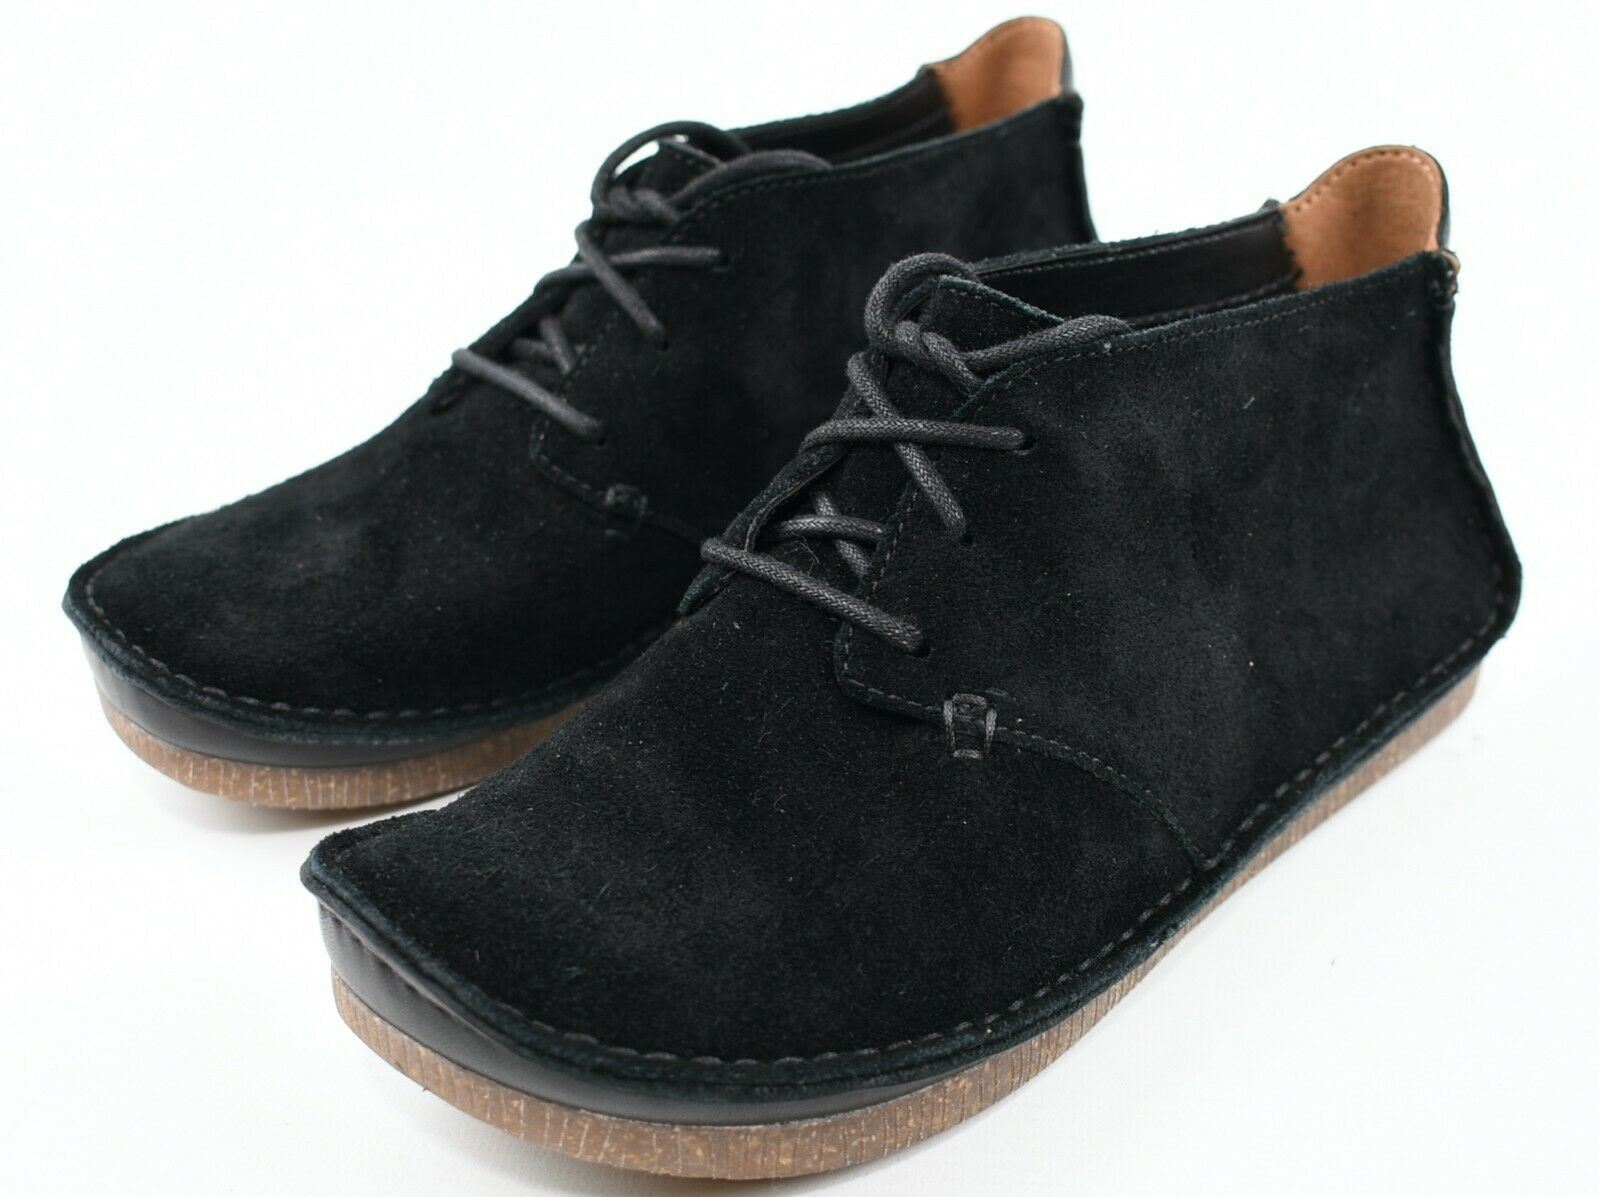 CLARKS Women's JANEY LYNN Black Suede Lace Up Shoes, size UK 3 / EU 36